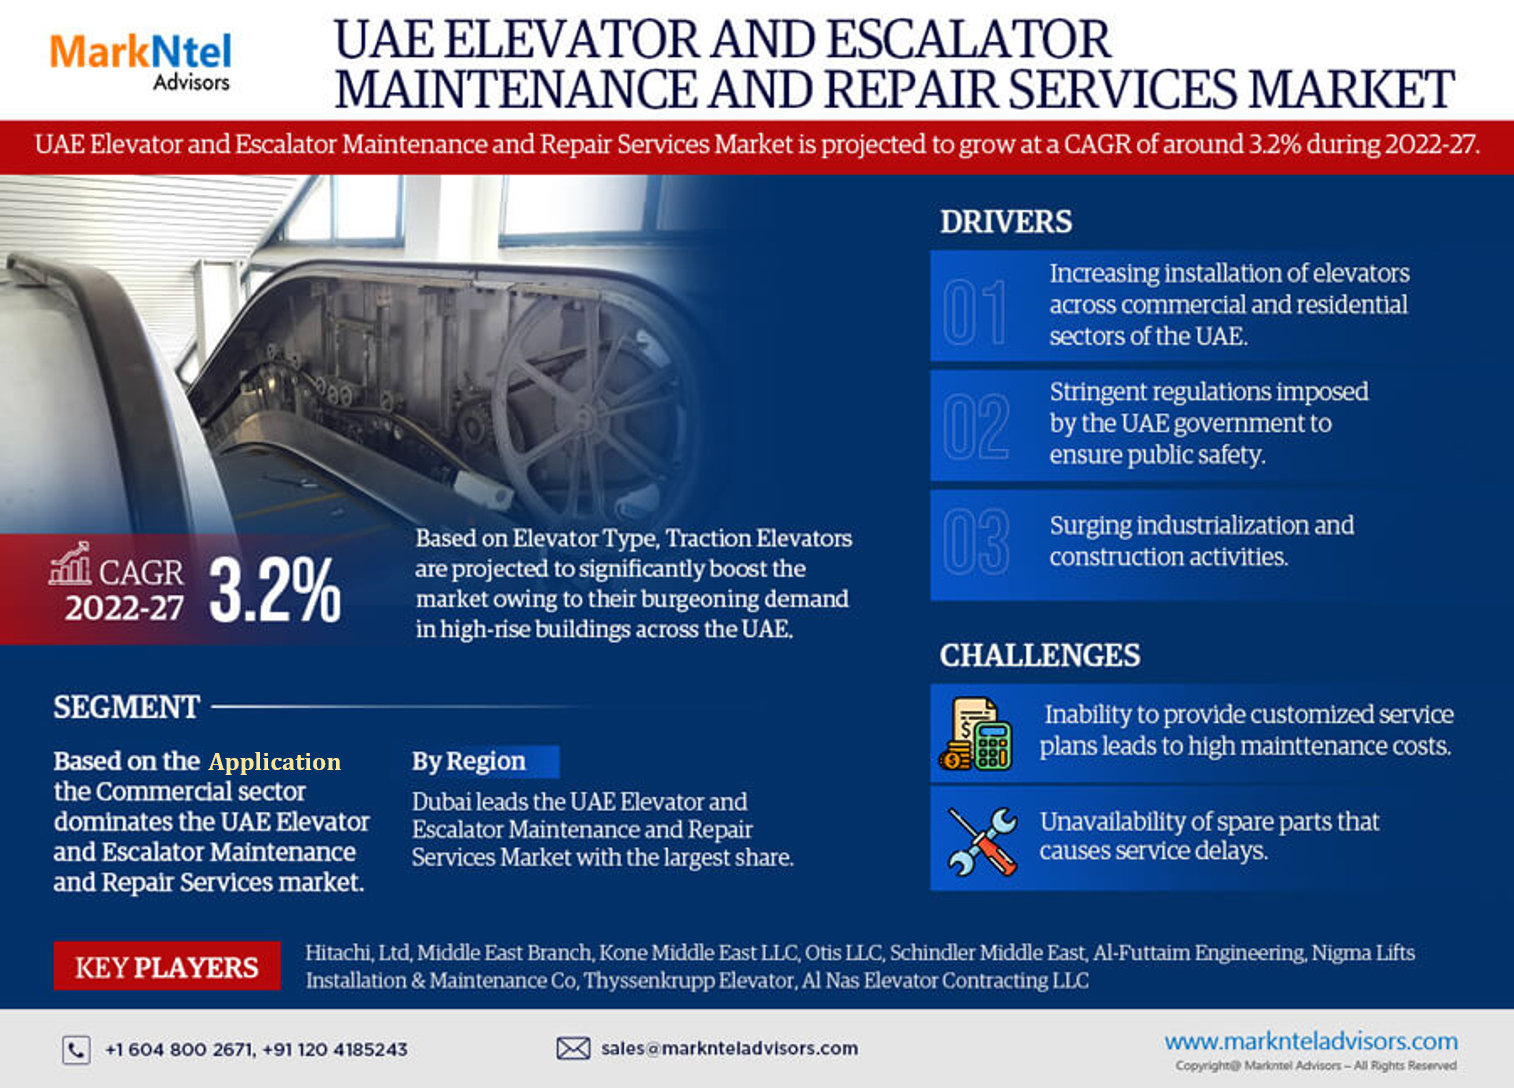 UAE Elevator & Escalator Maintenance & Repair Services Market